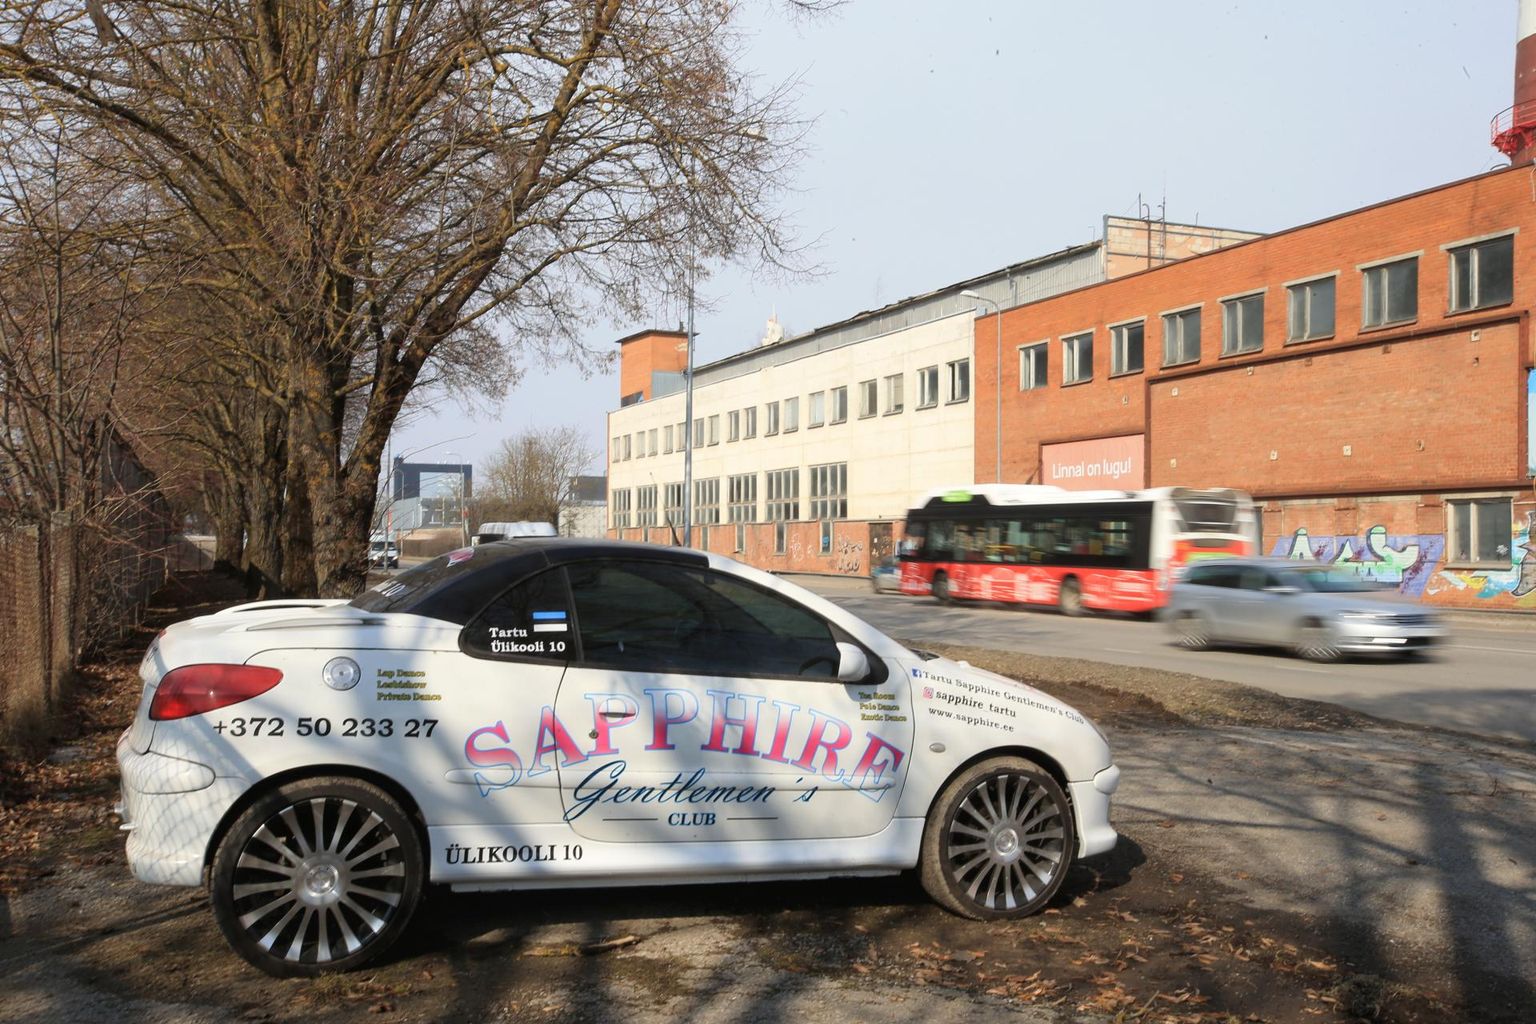 Sapphire’i klubi reklaam­autosid on märgata üle kogu Tartu, näiteks eile oli üks ka Turu tänaval.